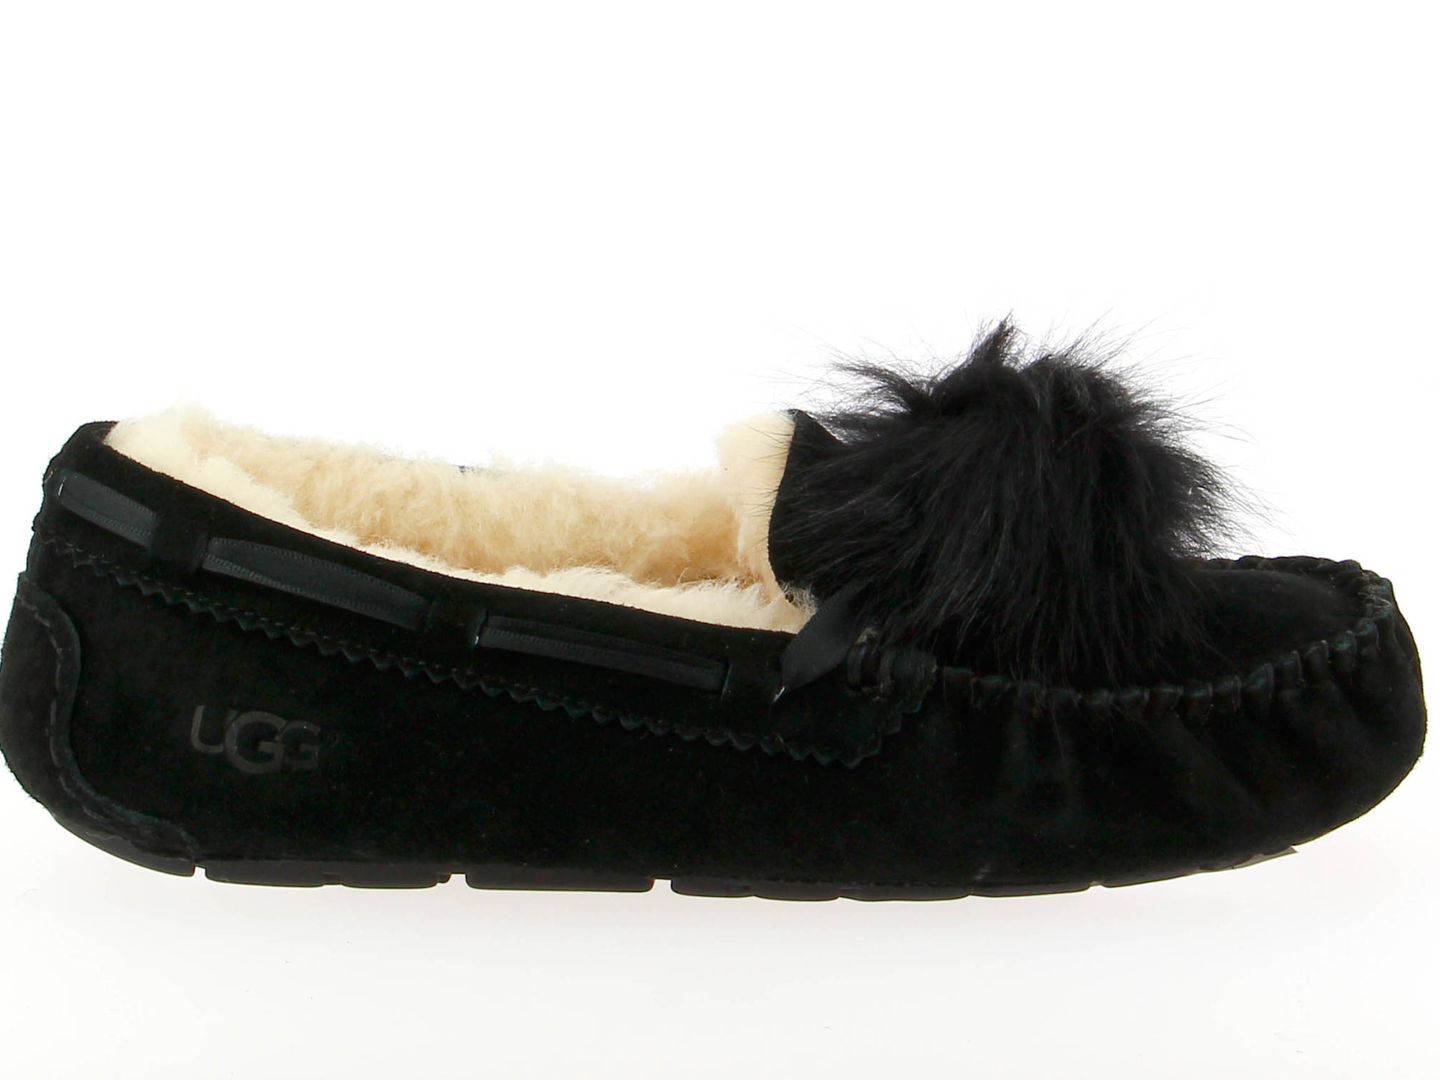 Durante el viaje toca cambiar los stilettos por un calzado más cómodo como el modelo Dakota de la firma UGG (119 euros).